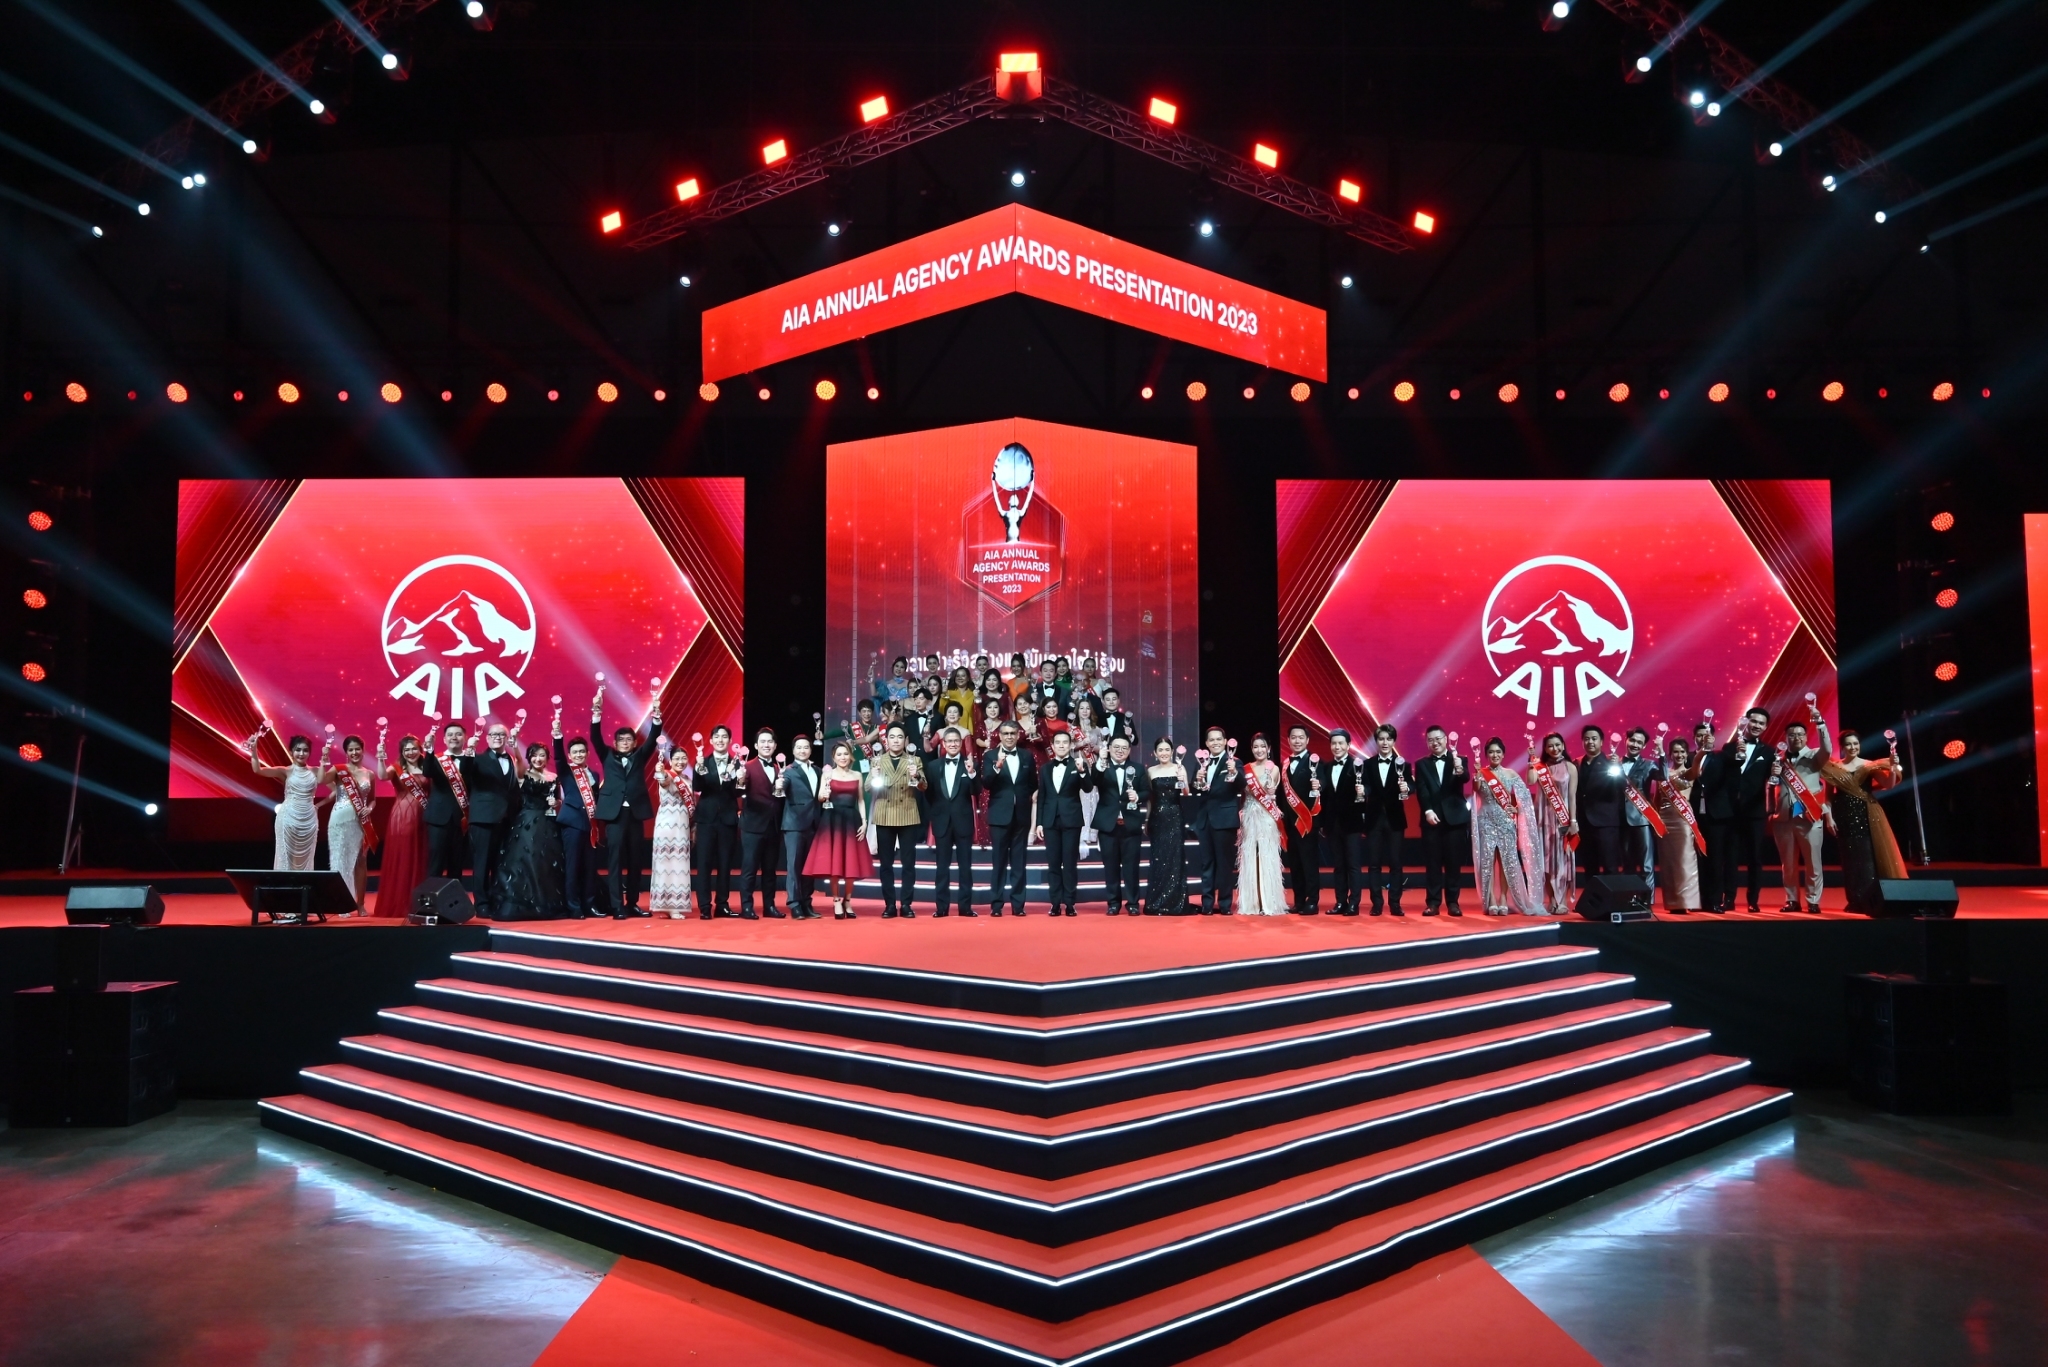 เอไอเอ ประเทศไทย มอบรางวัลเกียรติยศแก่สุดยอดตัวแทน “ที่สุดแห่งปี” ประจำปี 2566 ในงาน AIA Annual Agency Awards Presentation 2023 สำนักพิมพ์แม่บ้าน